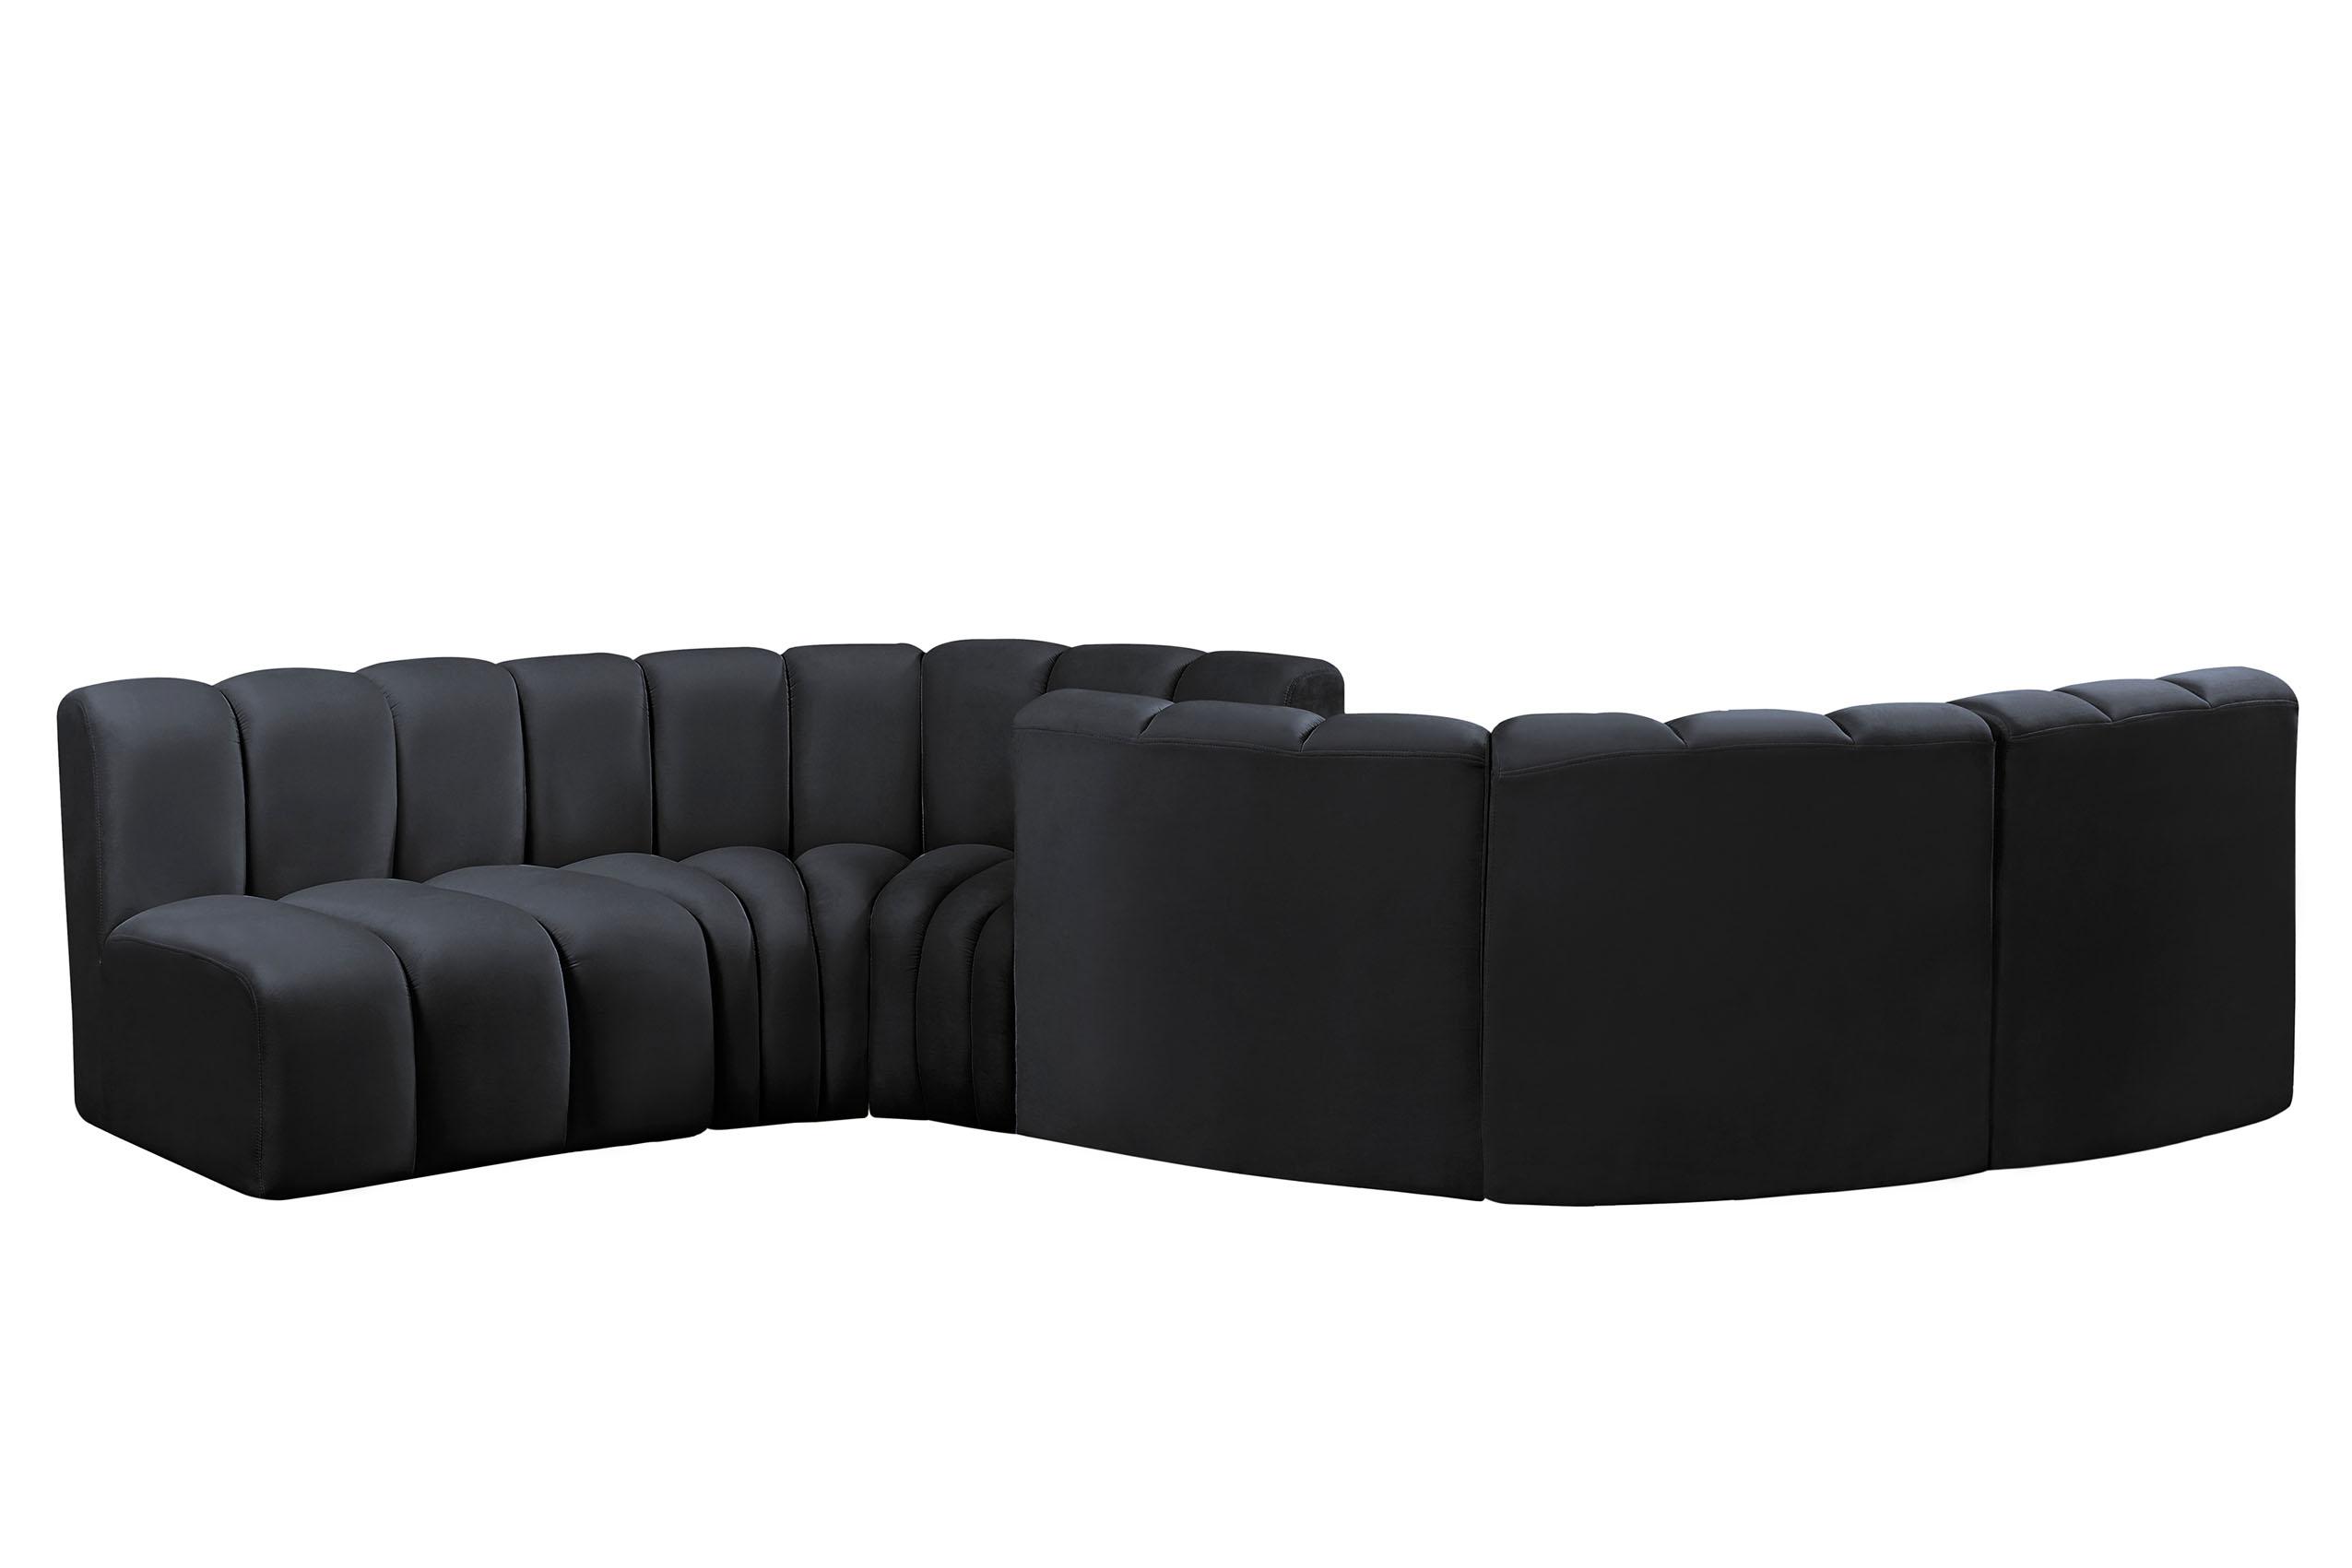 

    
103Black-S6D Meridian Furniture Modular Sectional Sofa
